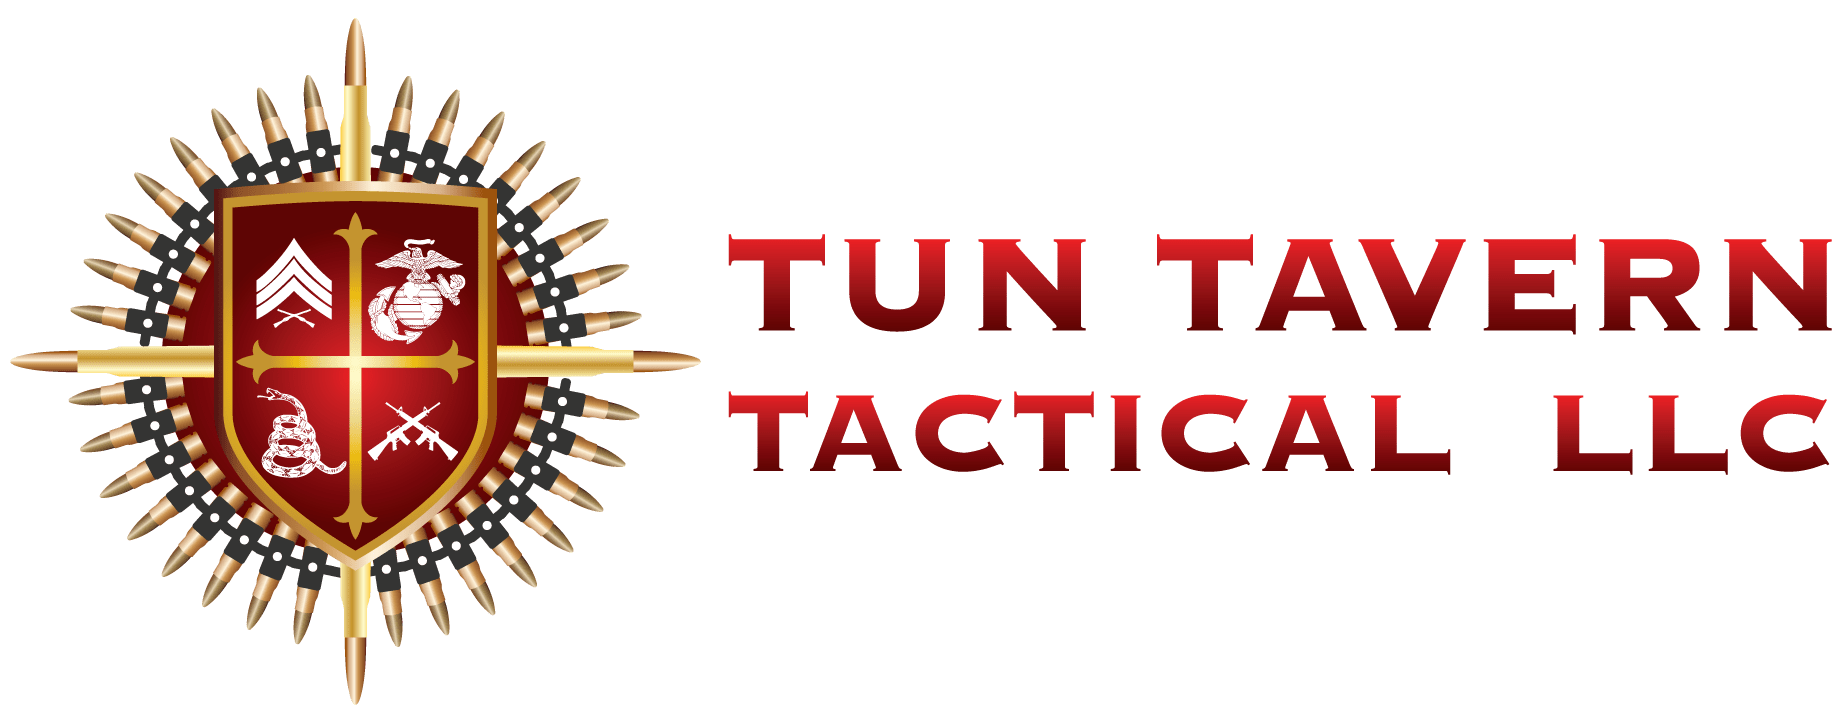 Tun Tavern Tactical